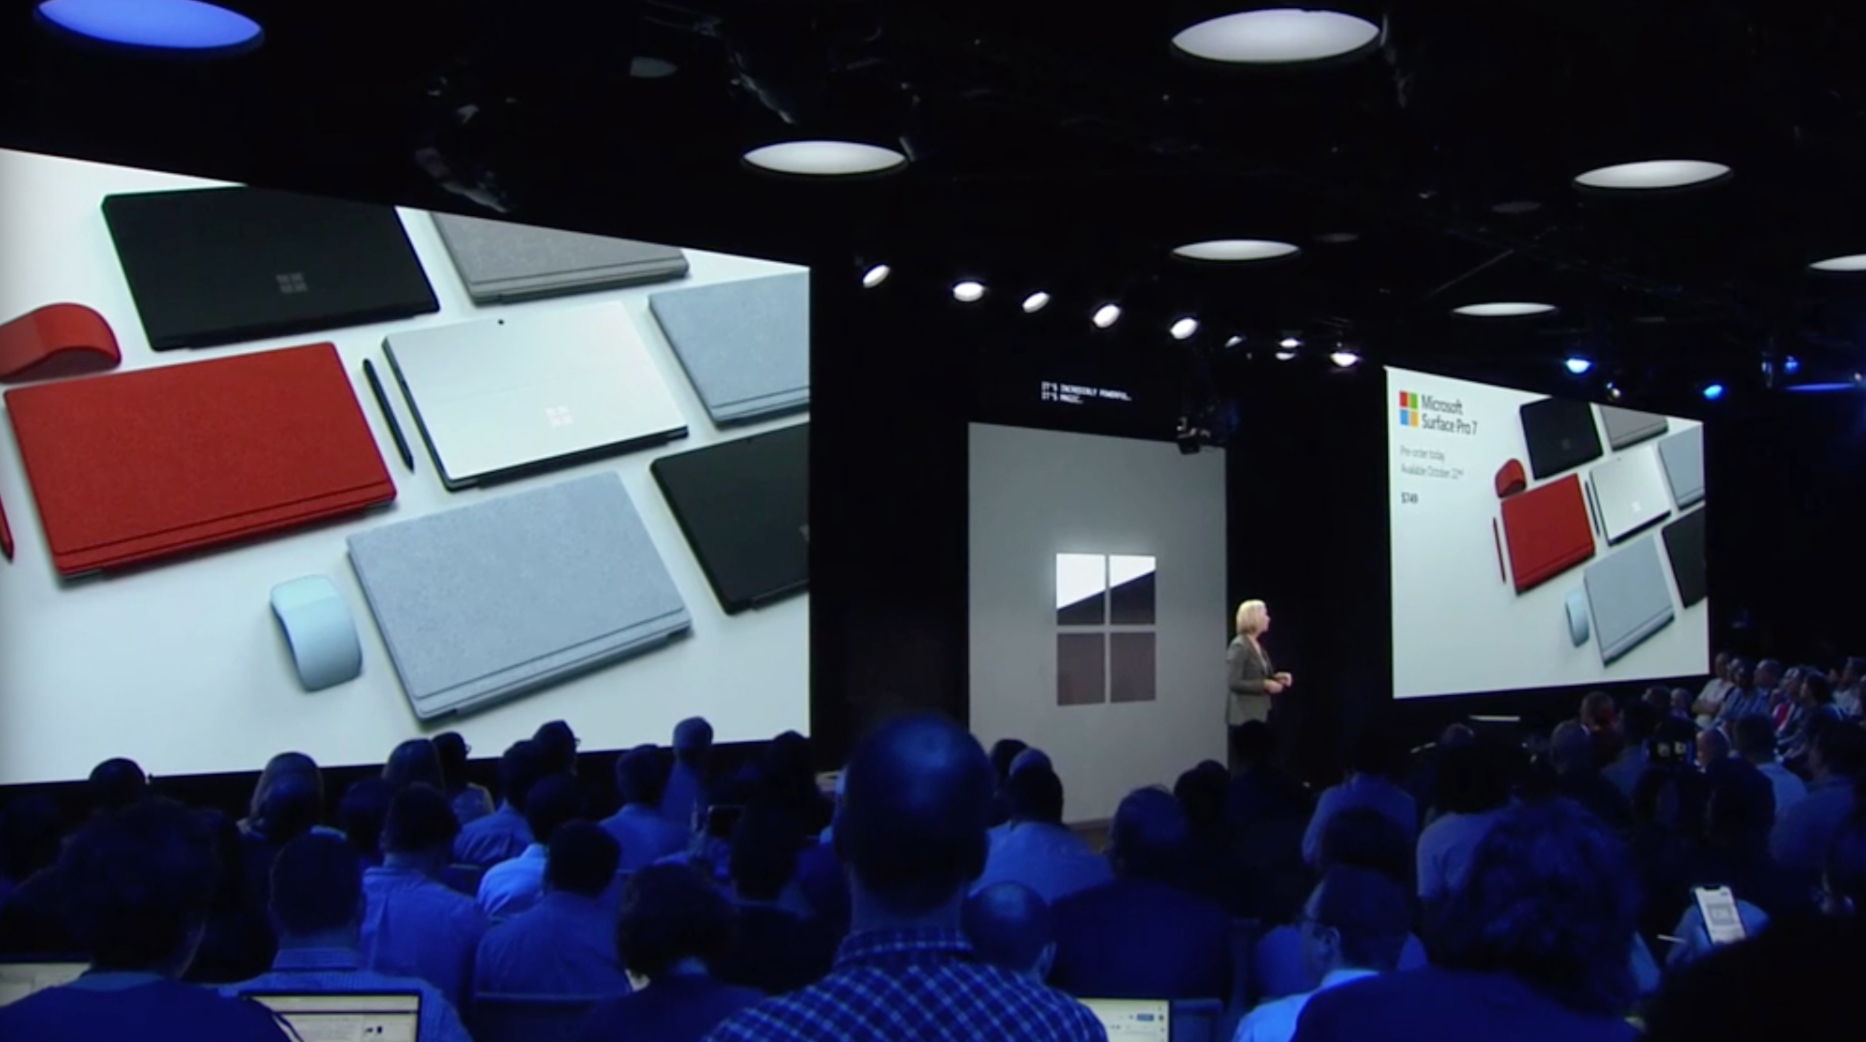 Đây là Surface Pro 7: chả khác gì bản trước, nhưng đã có cổng USB-C, giá 749 USD, có thể đặt hàng ngay hôm nay - Ảnh 2.